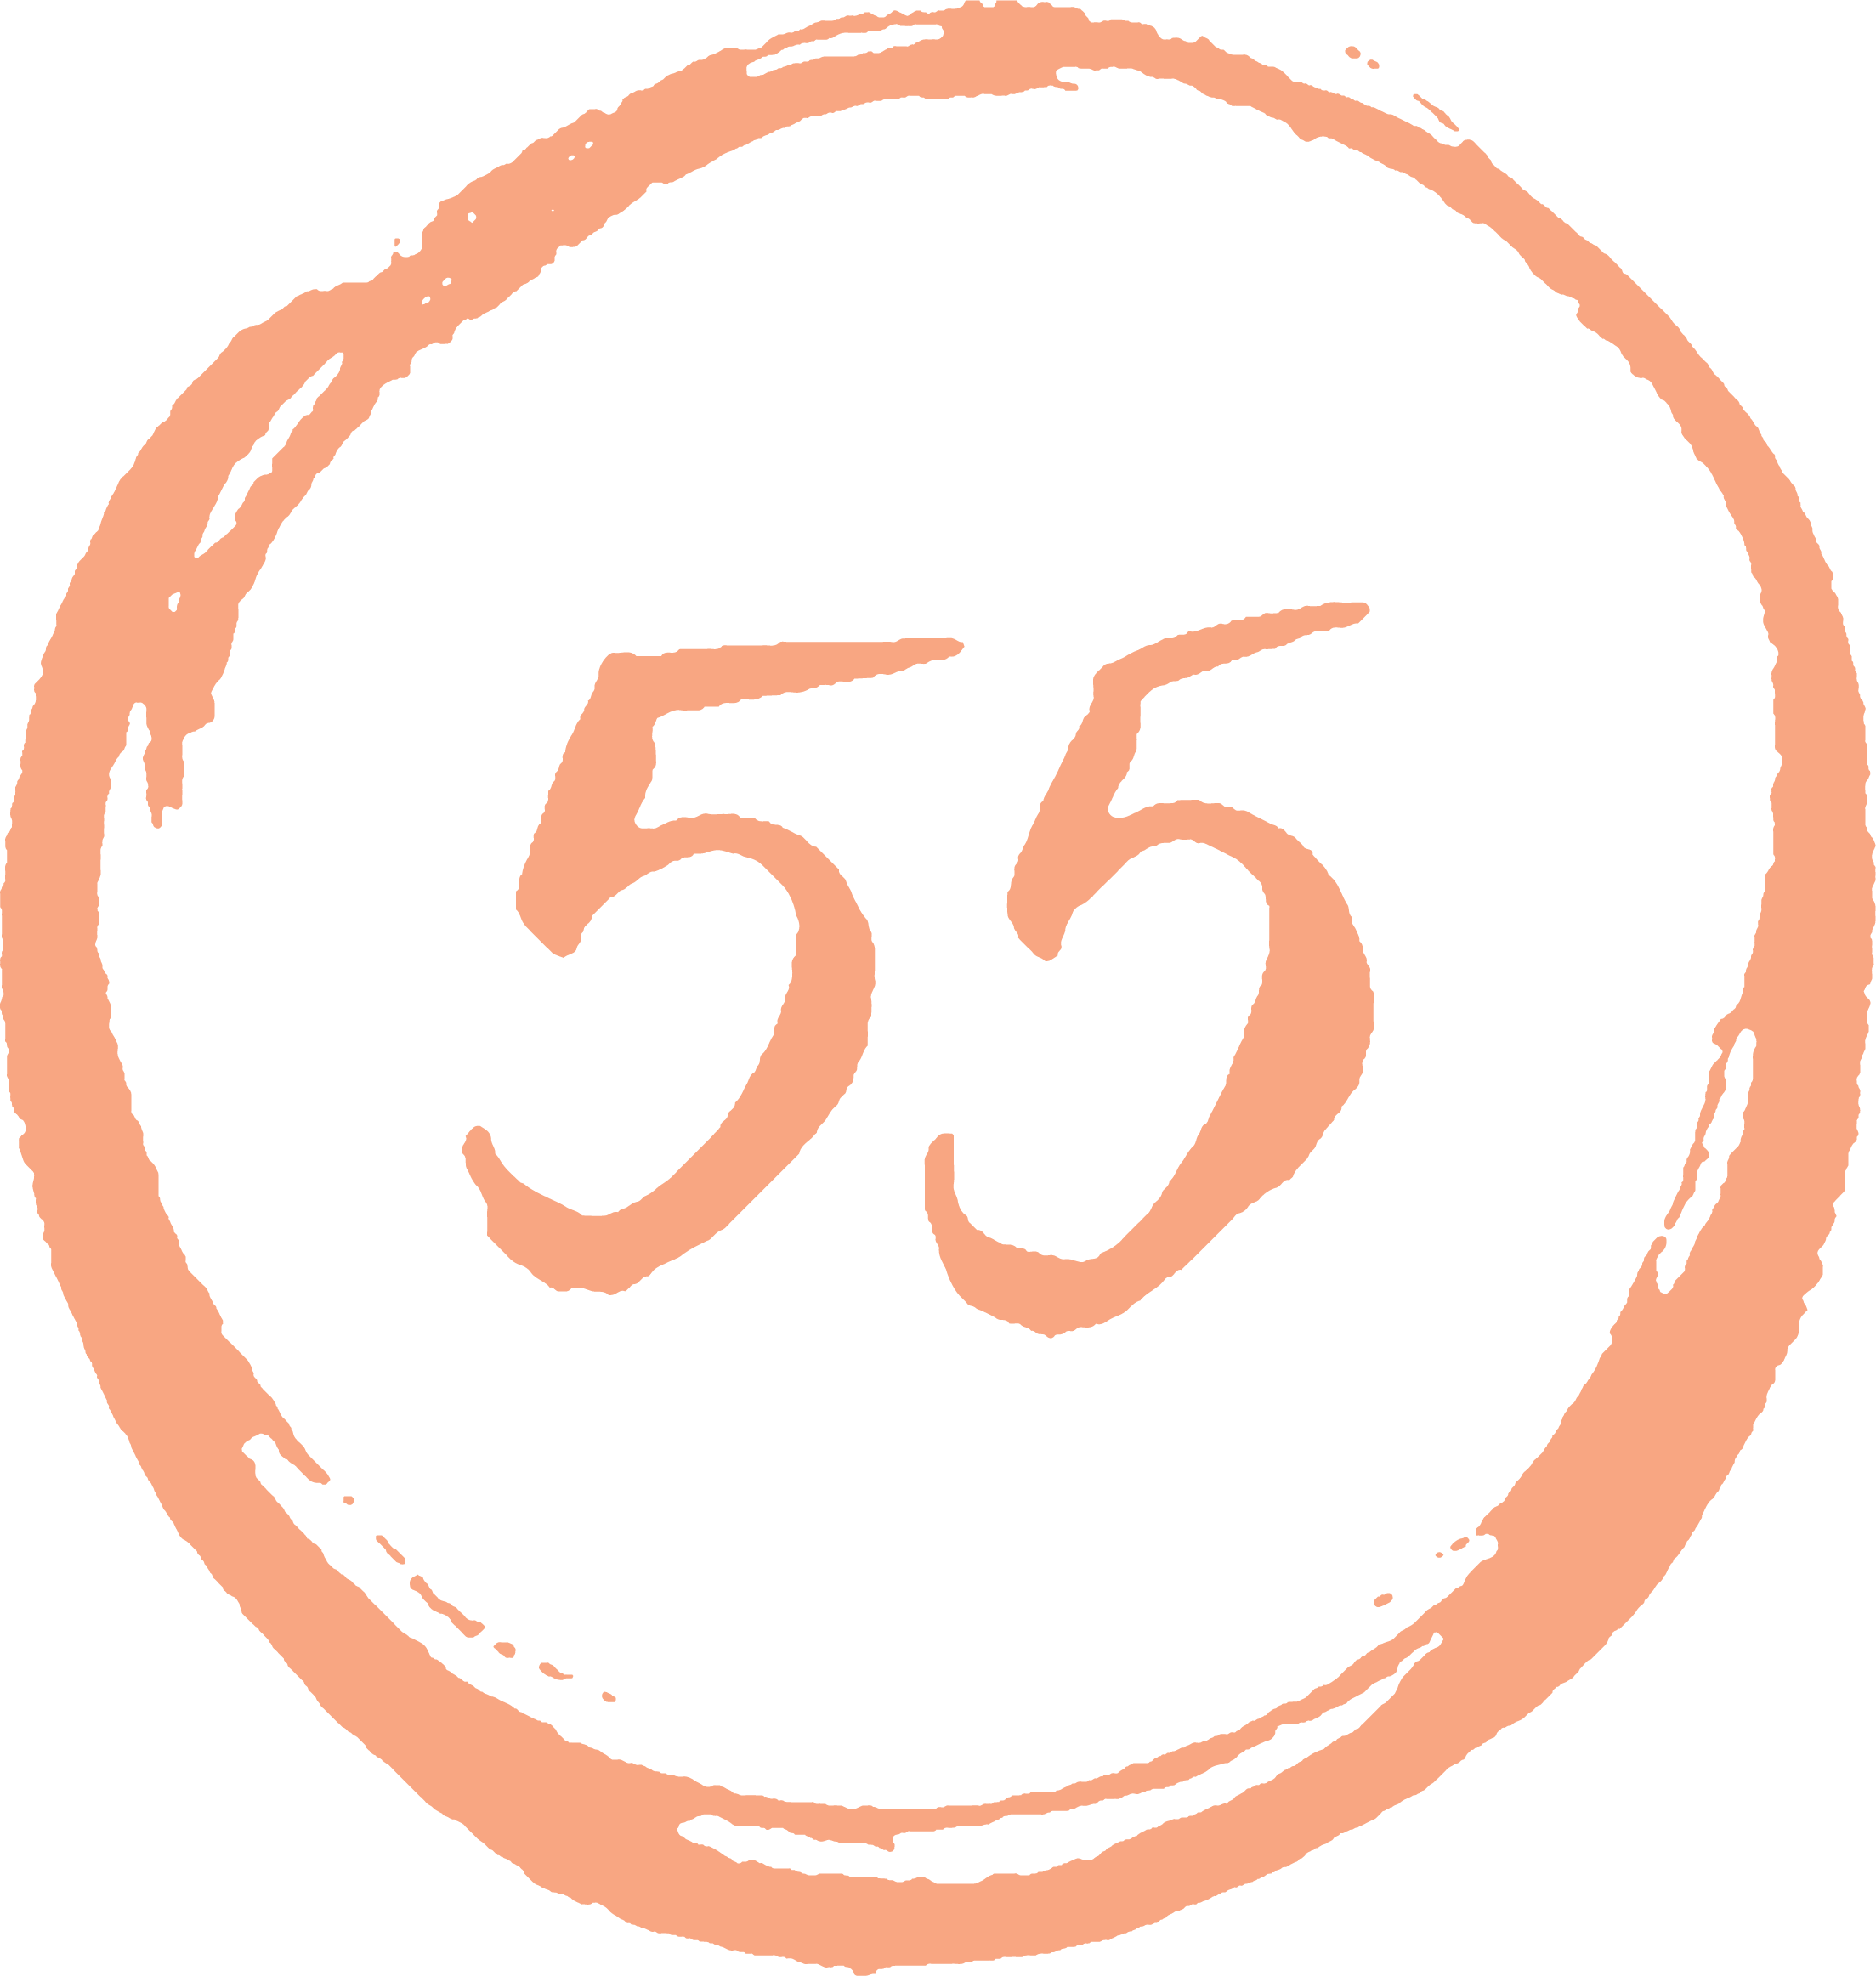 55 Exchange Clemson Ice Cream logo